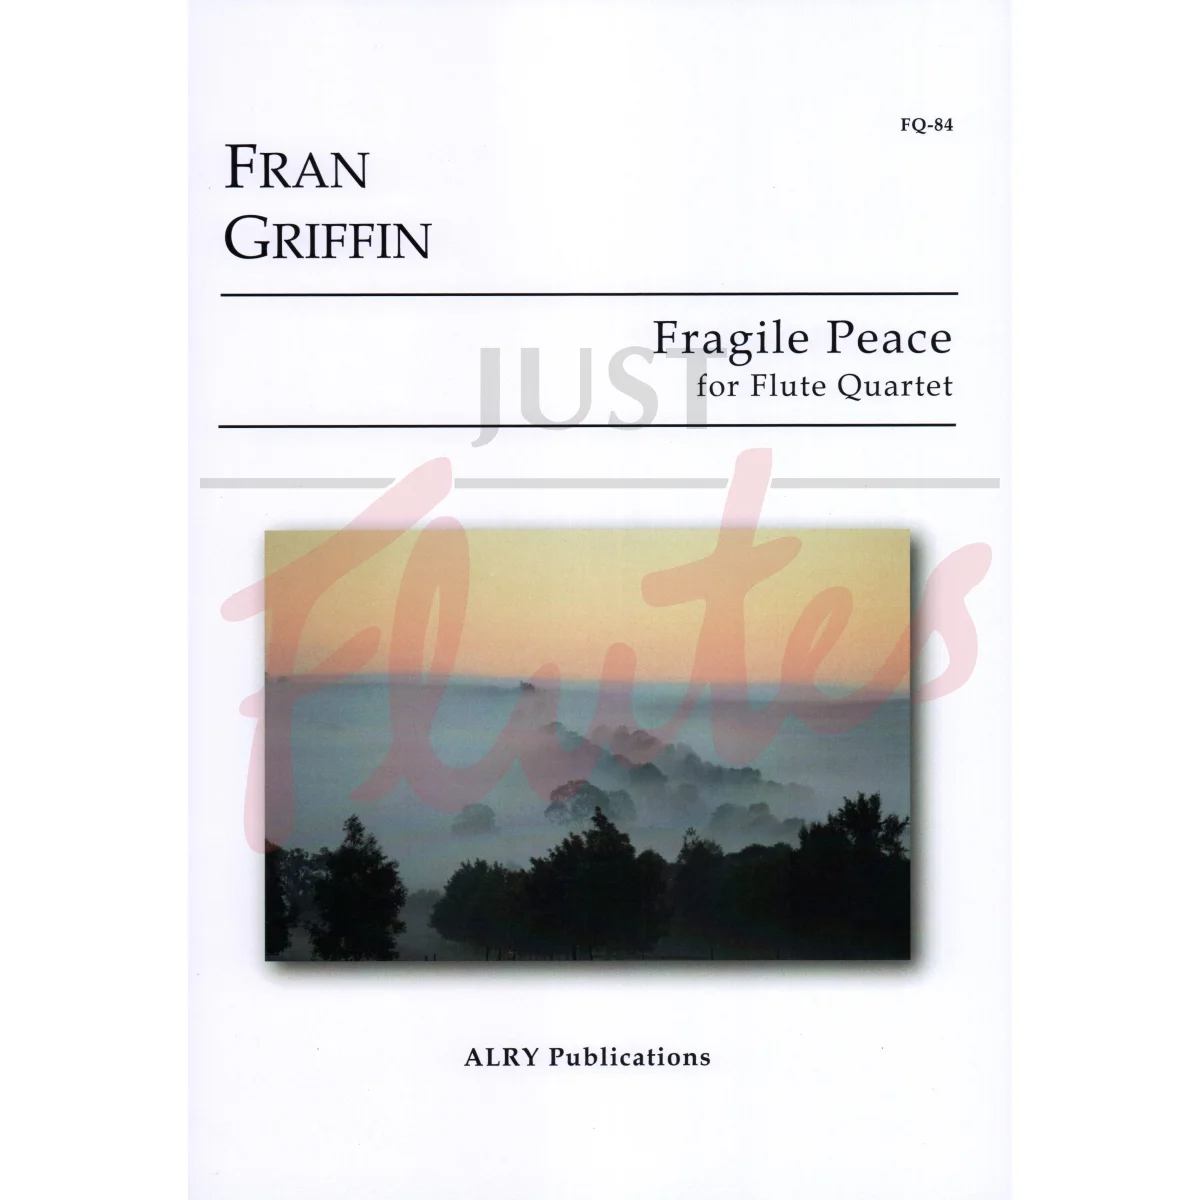 Fragile Peace for Flute Quartet